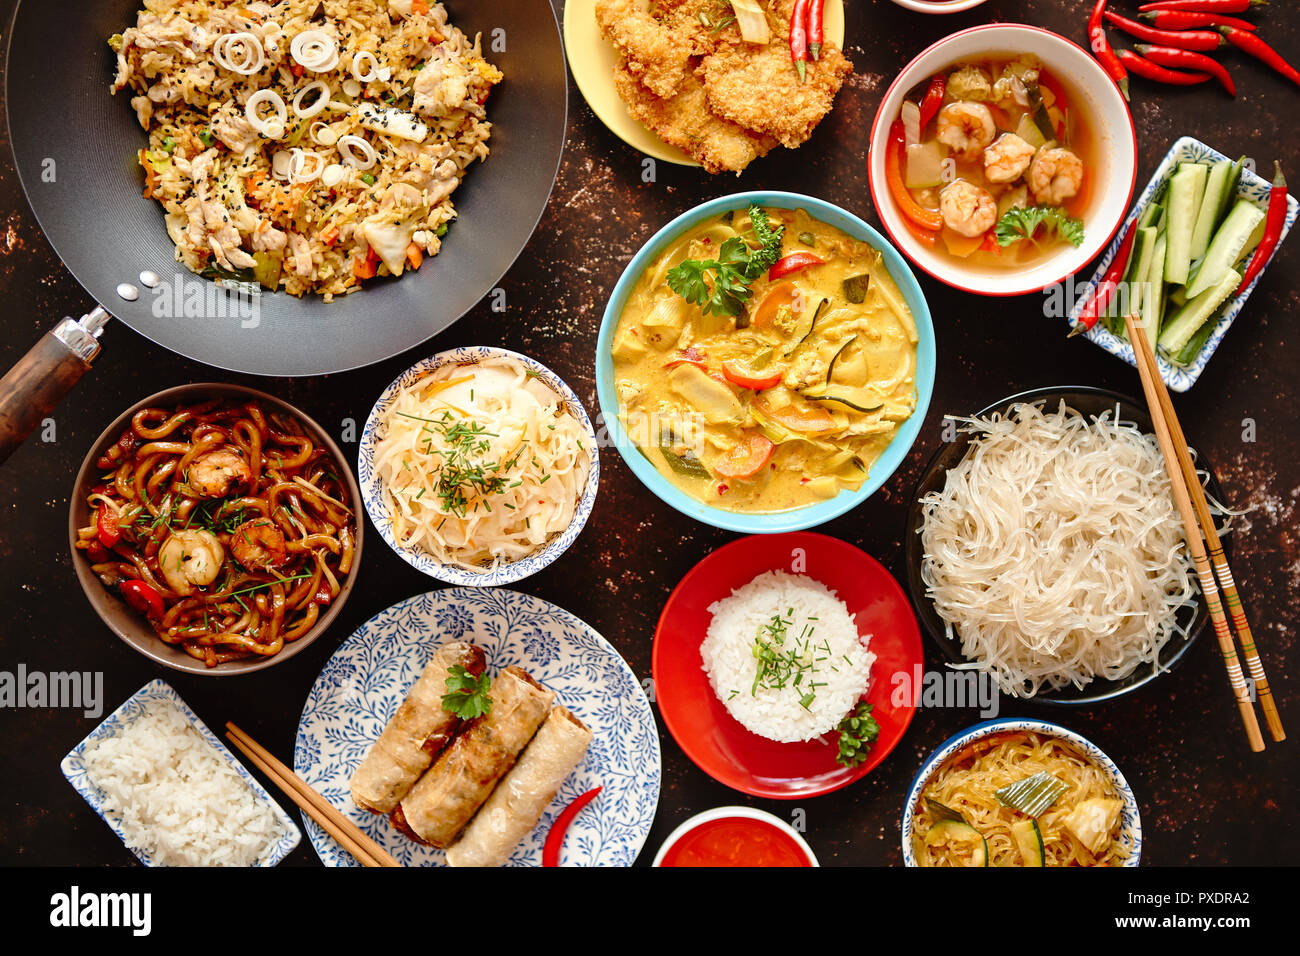 Cuisine orientale asiatique dans la composition de la vaisselle colorée Banque D'Images